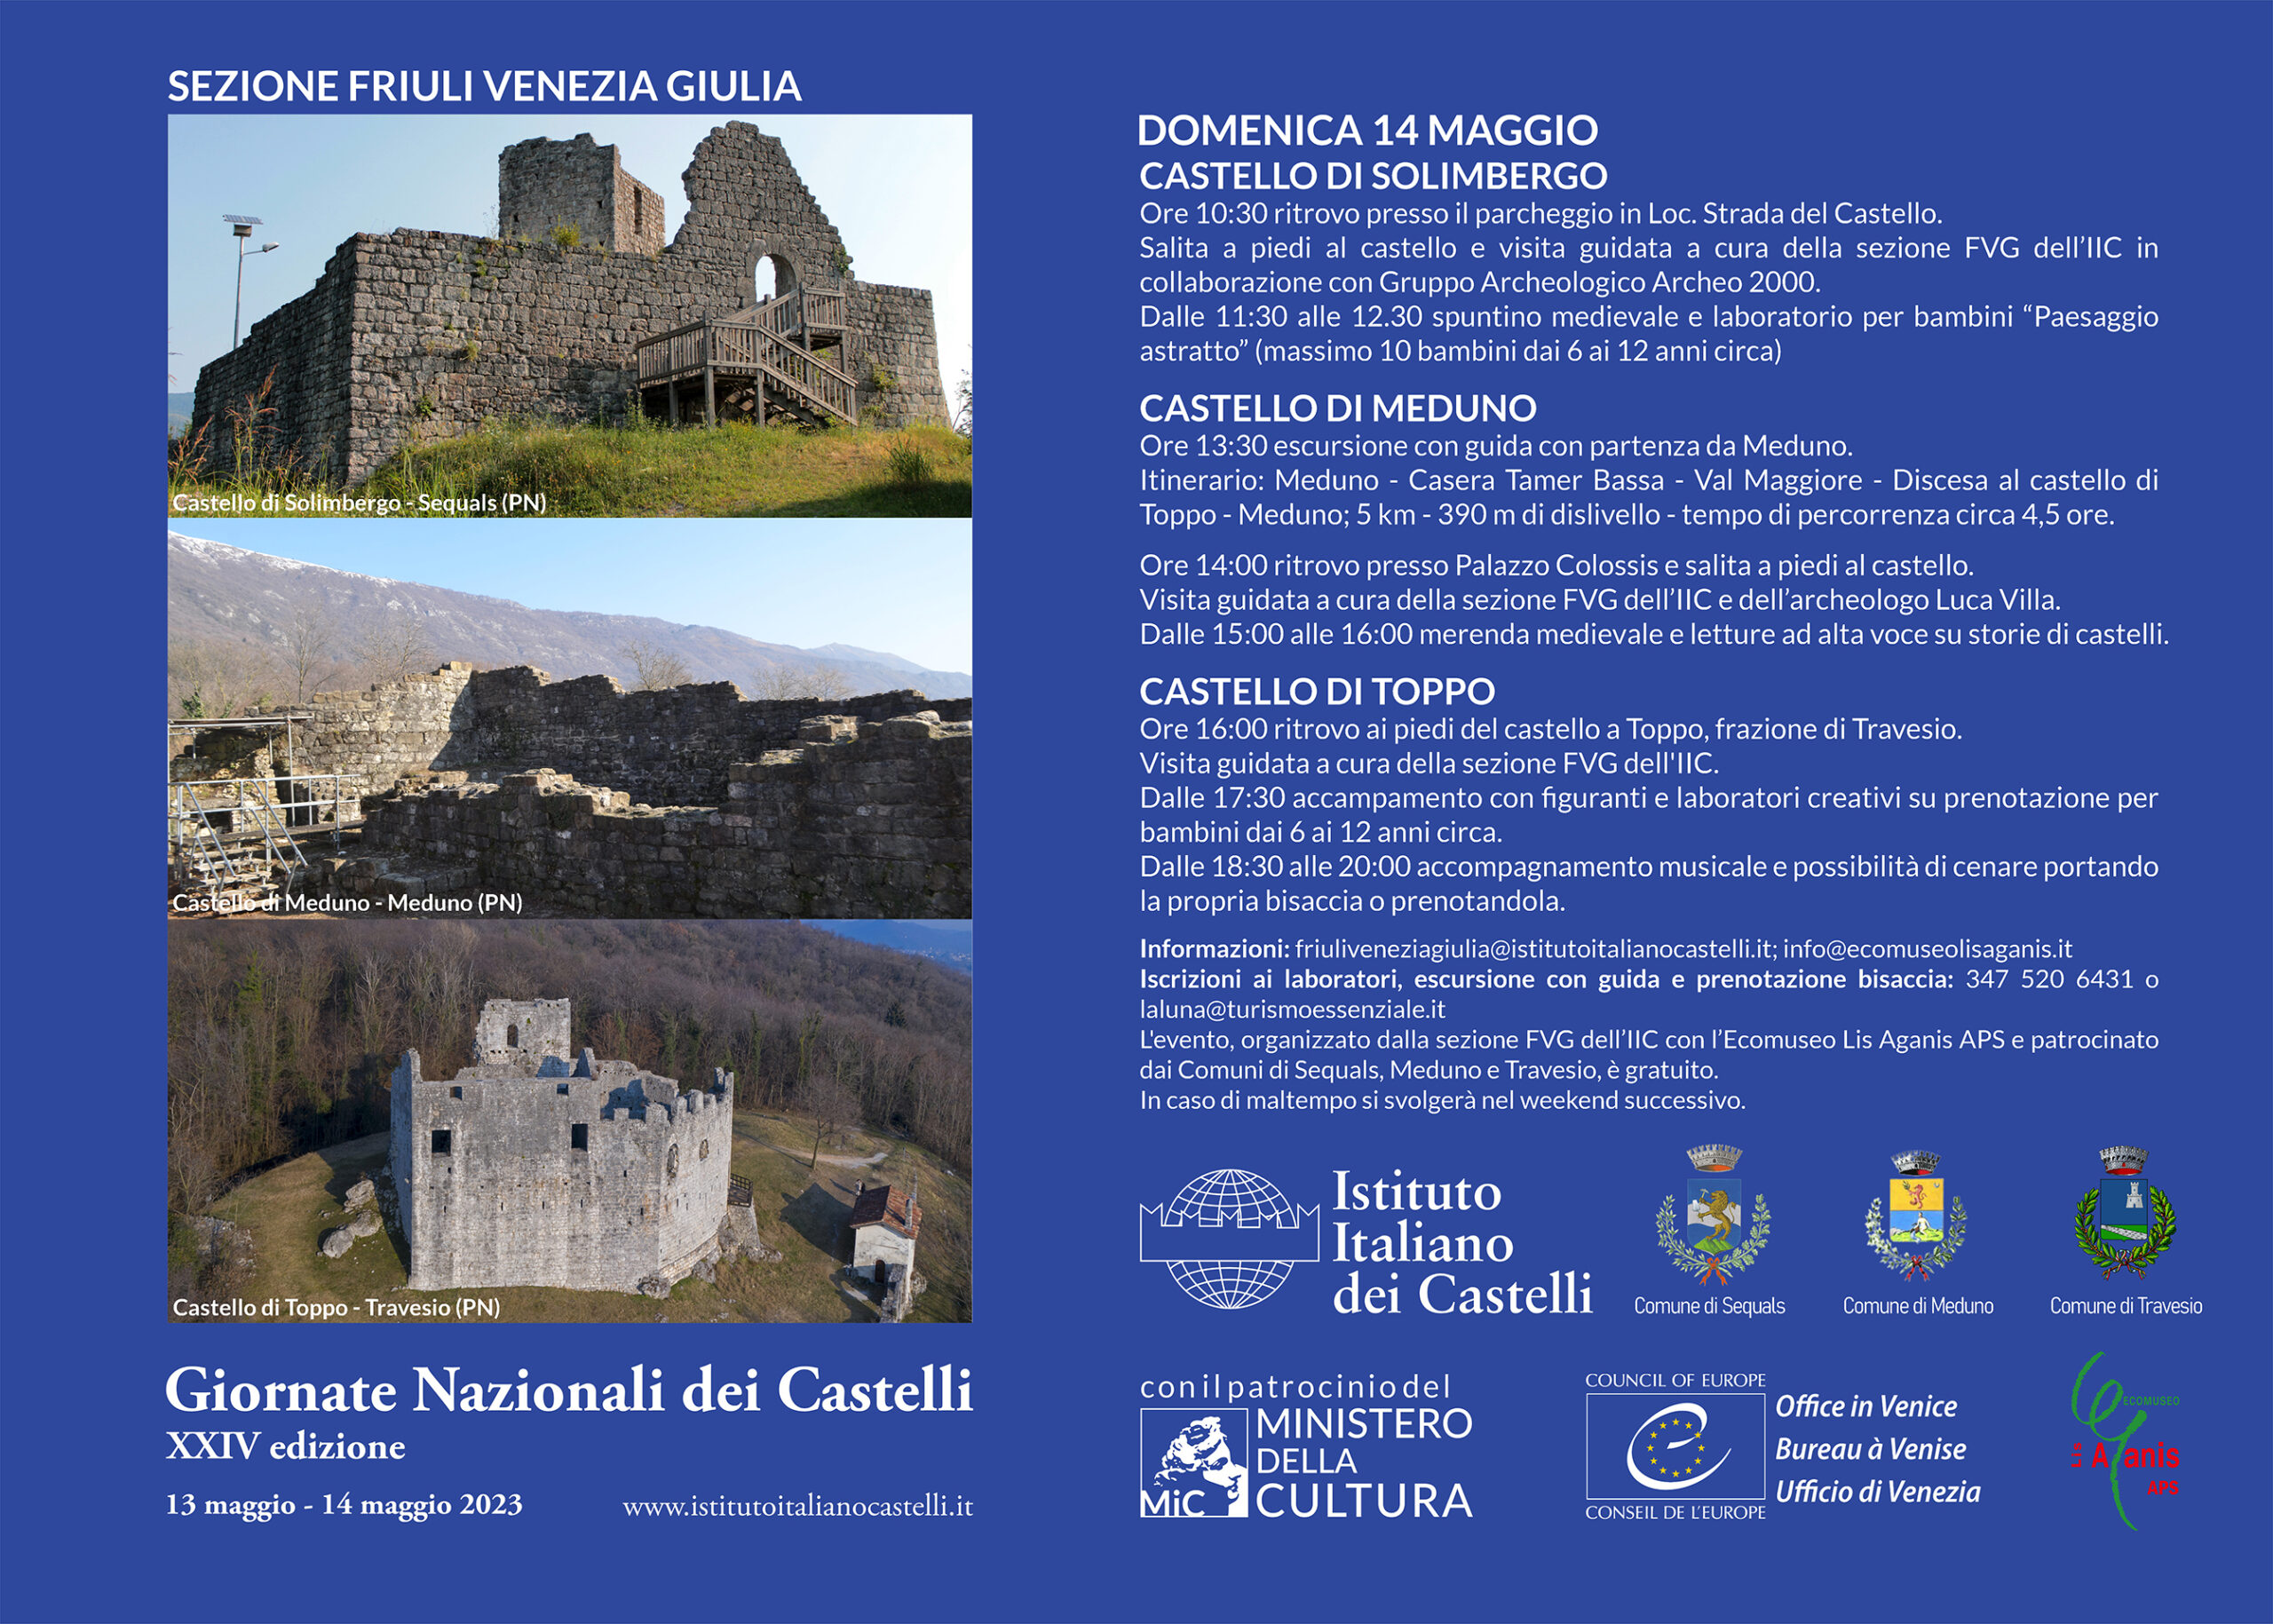 Giornata Nazionale dei Castelli 2023 – Friuli Venezia Giulia